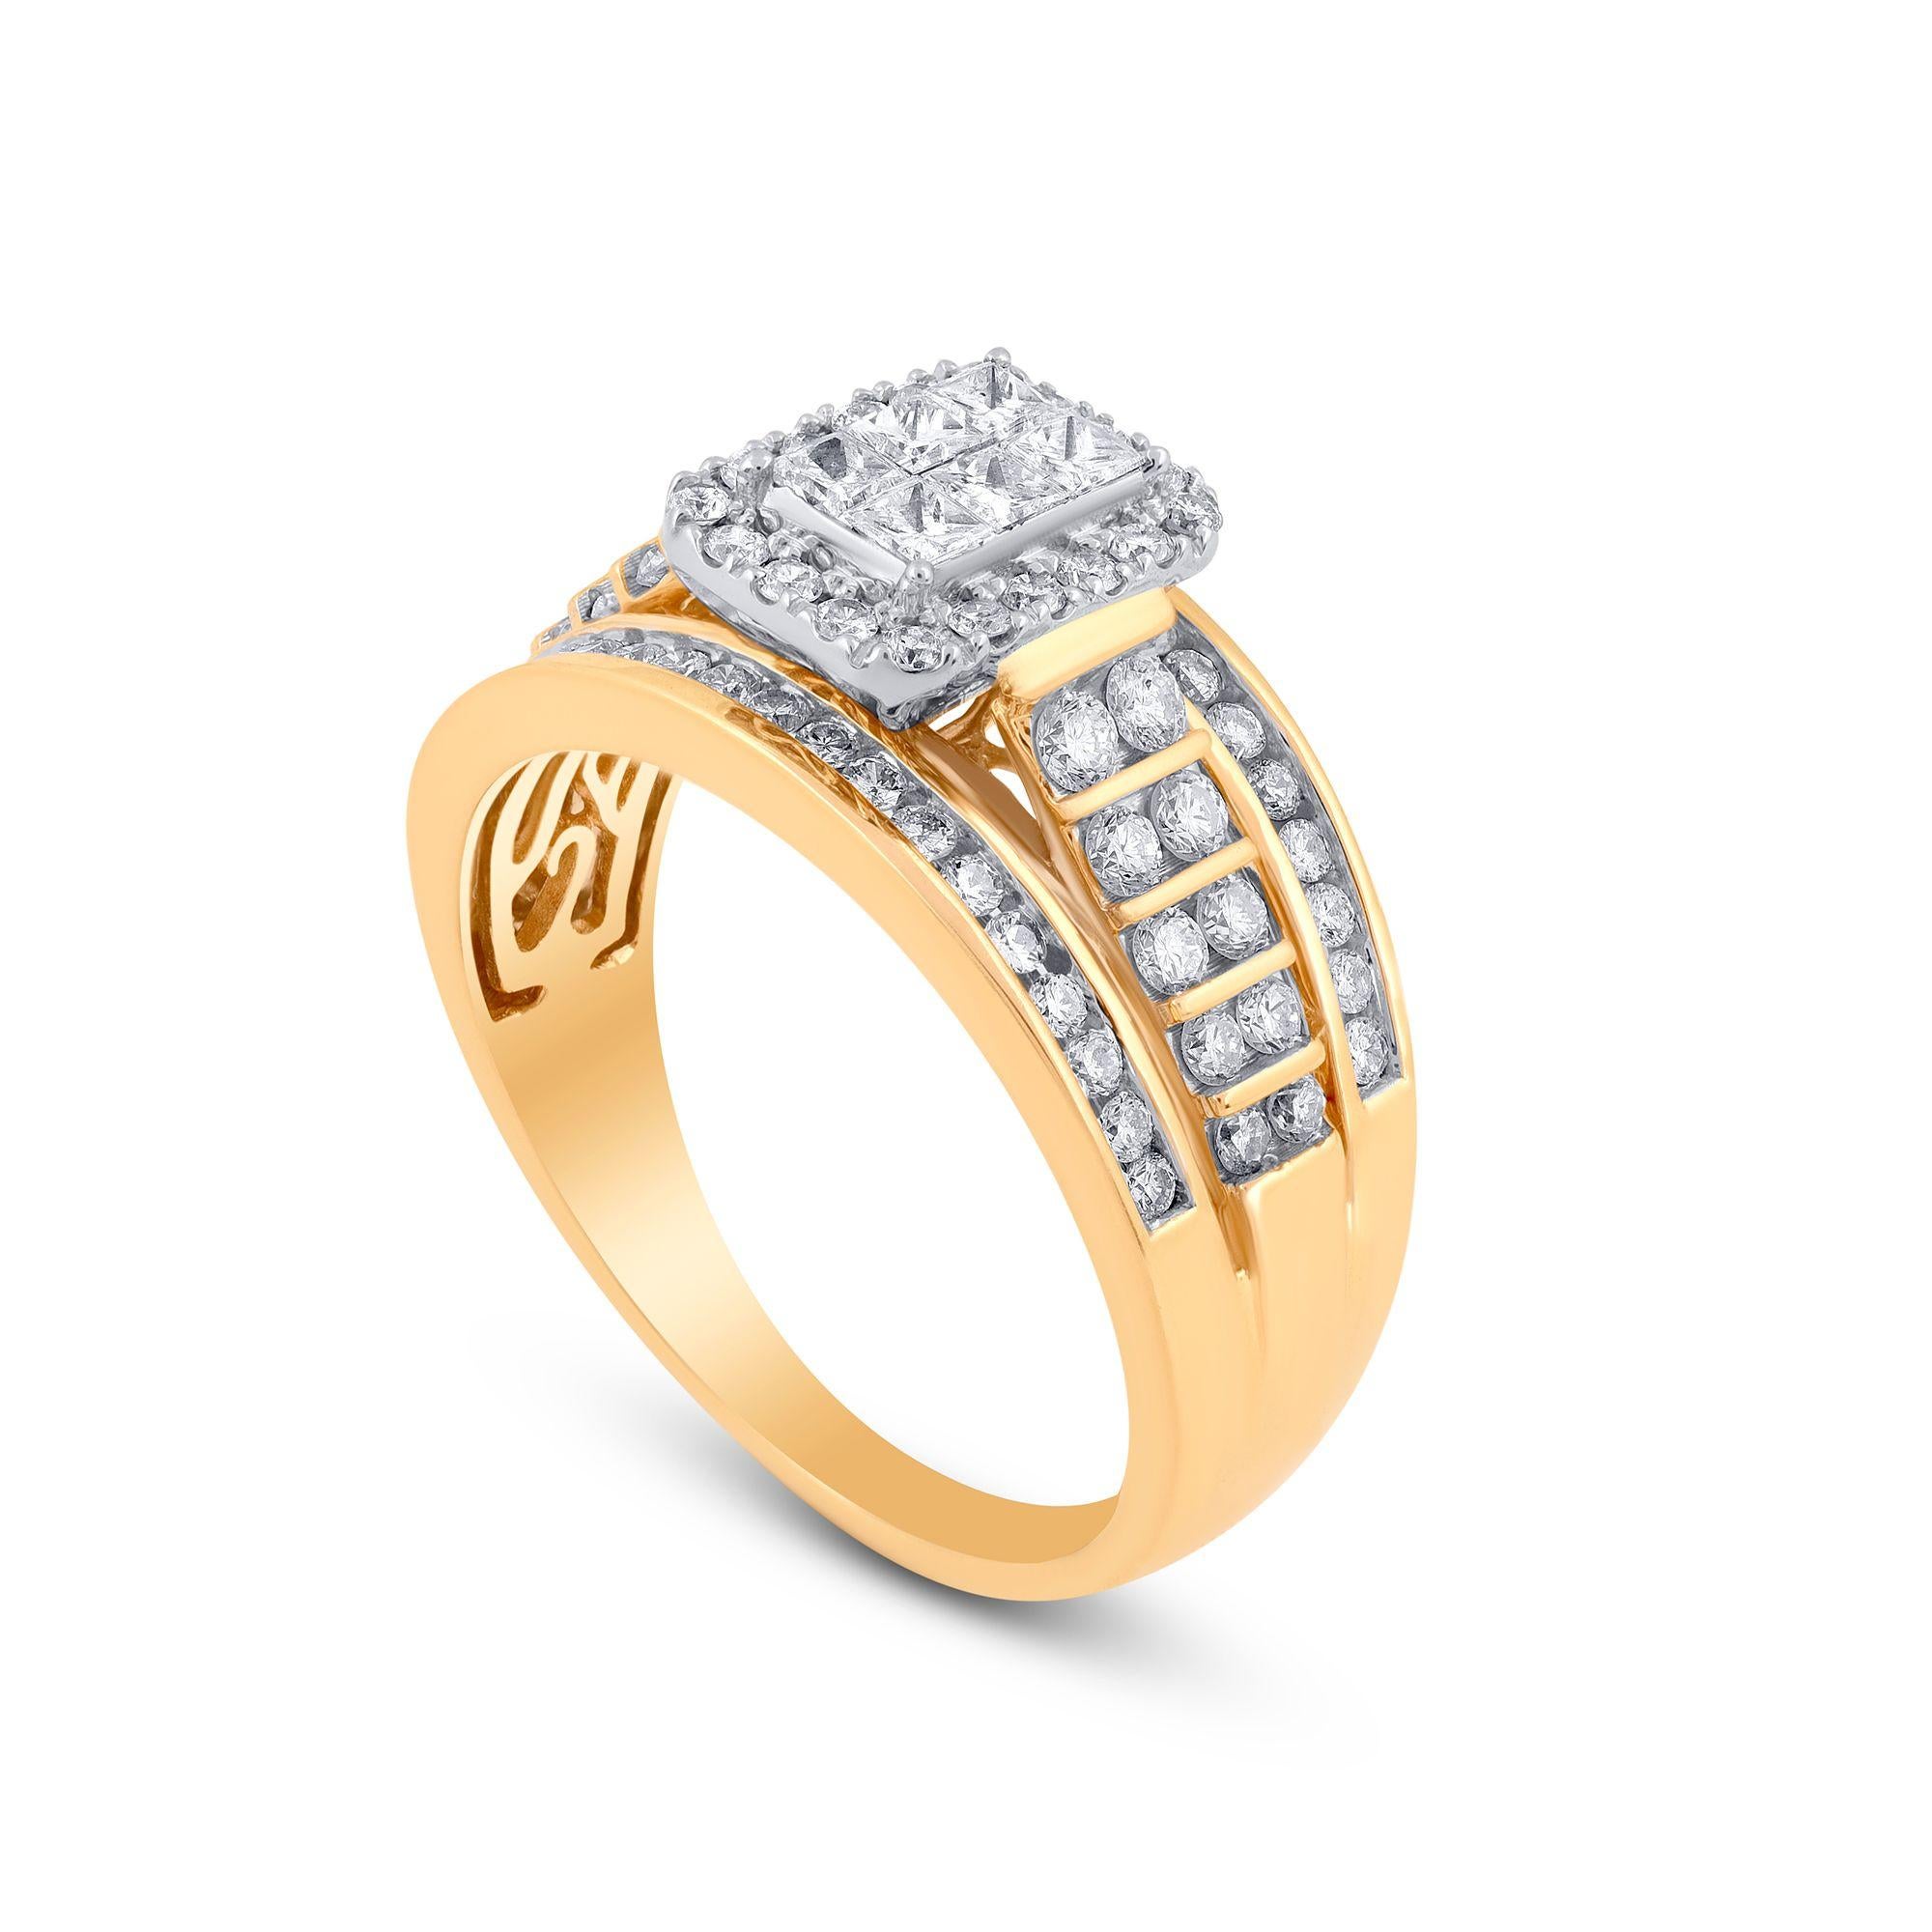 Exquisit gestalteter diamantener Verlobungsring, besetzt mit 80 Diamanten in Kanal-, Mikropflaster- und Zackenfassung, gefertigt aus 14 Karat Gelbgold. Die Diamanten sind mit der Farbe G-H und der Reinheit I1-I2 bewertet. 
